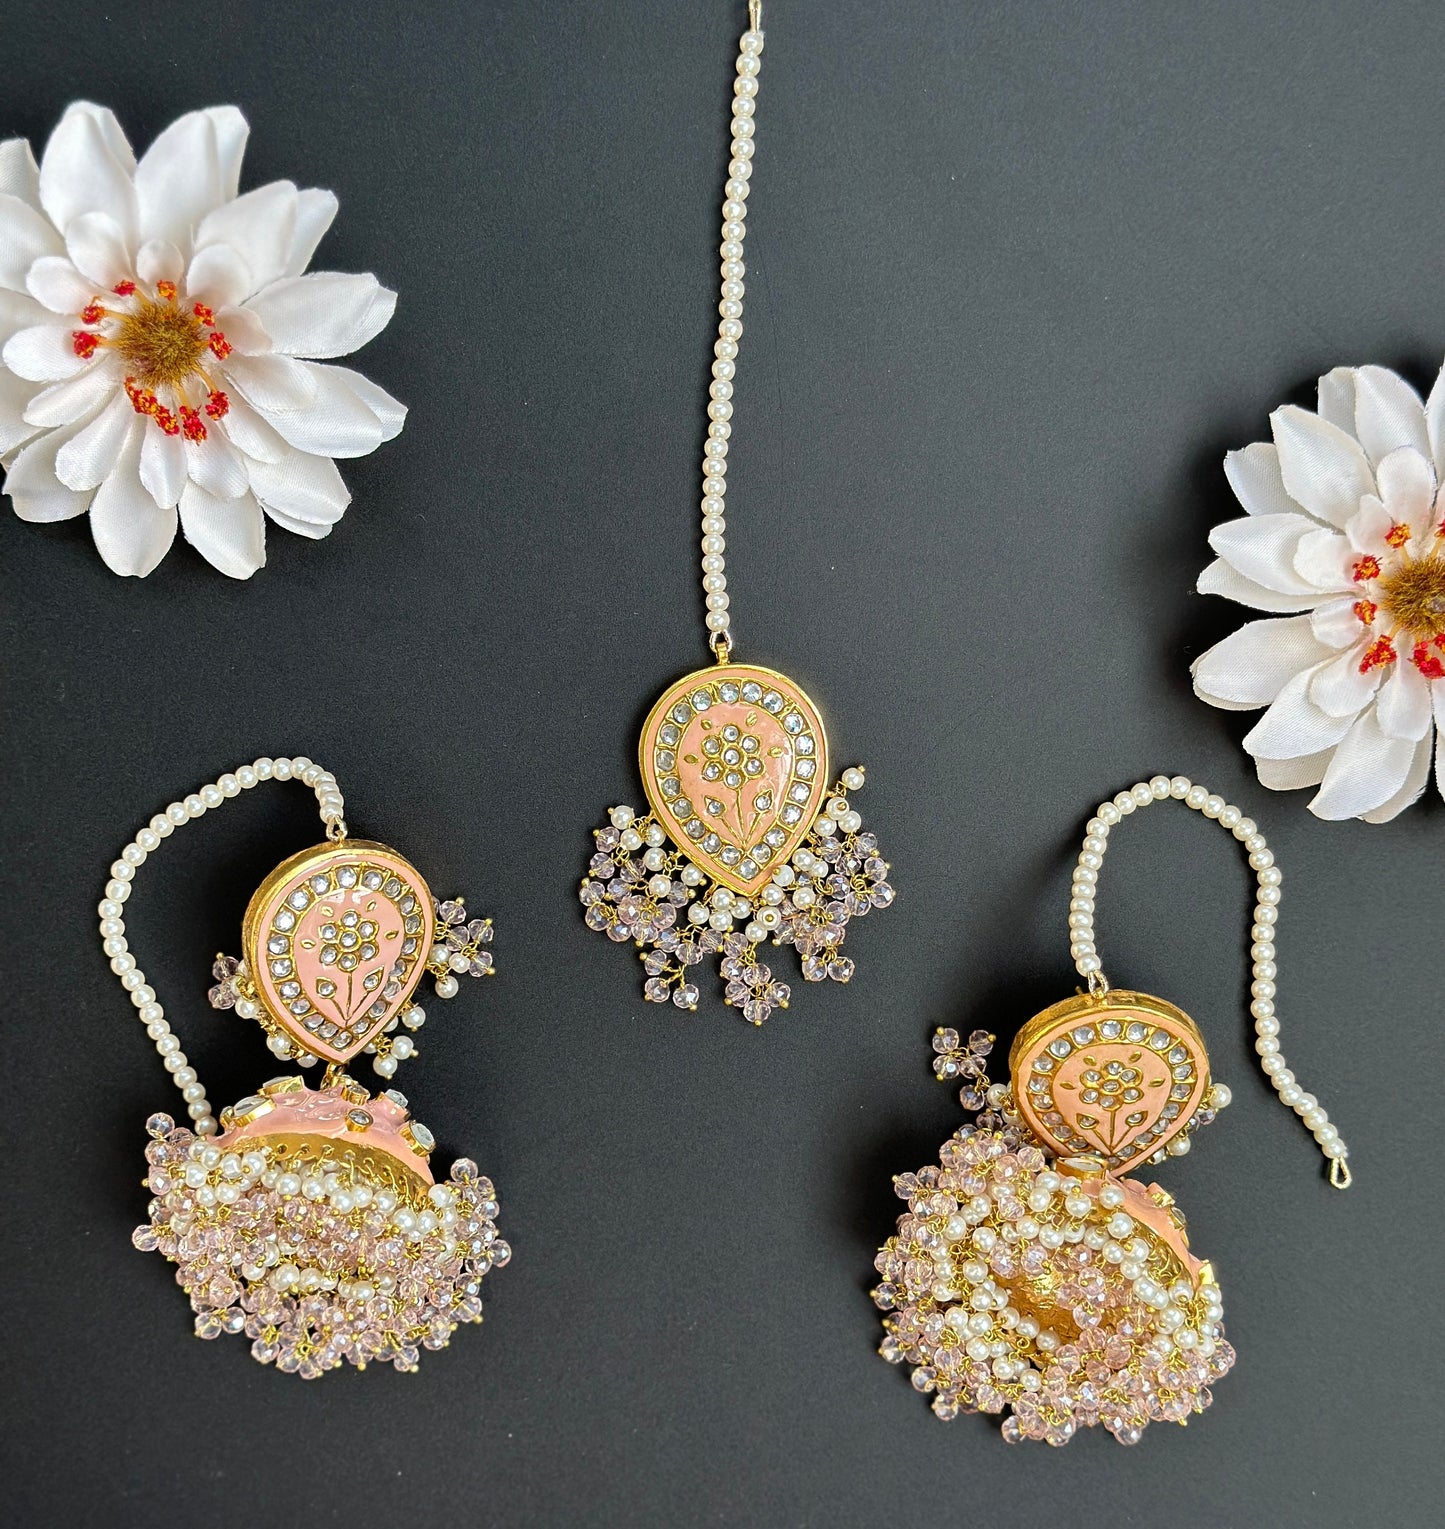 Pakistani Kundan jhumka Earrings/meenakari long earrings/Bollywood Jewelry/Green Kundan earrings/indian jhumka/Pink Polki Jhumka/Sabyasachi